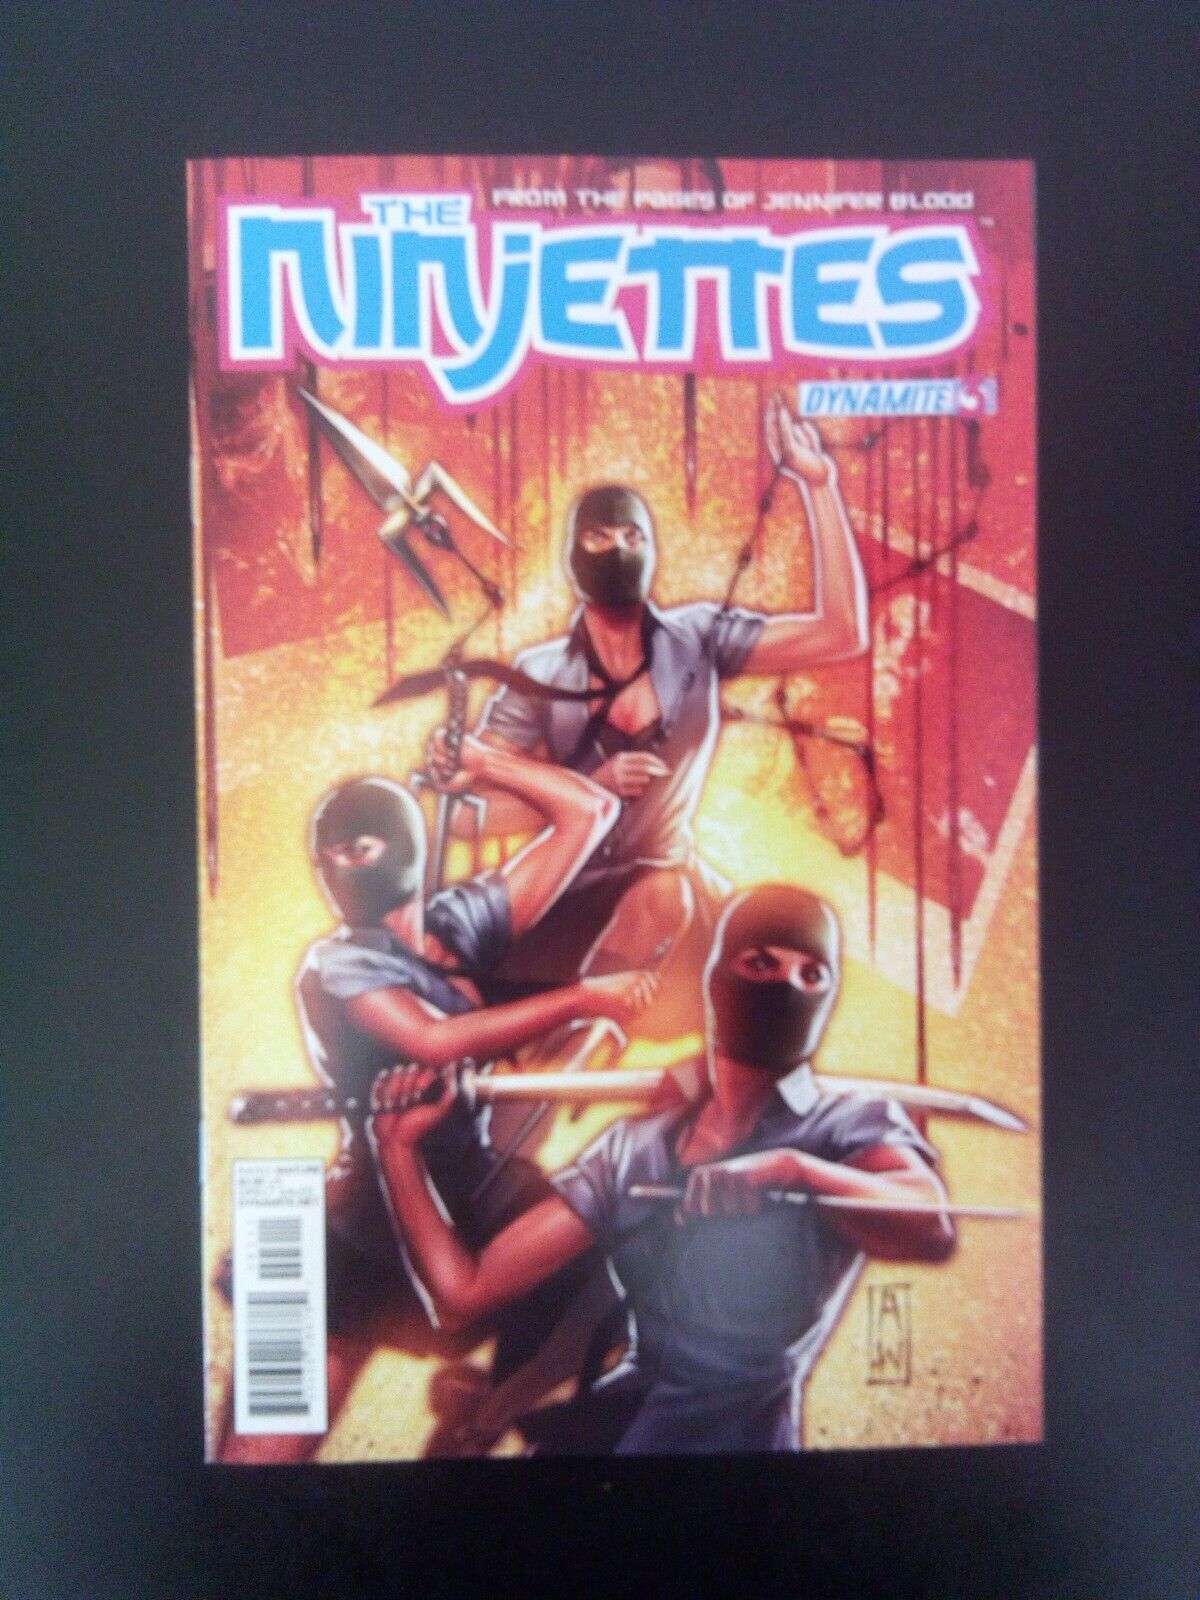 The Ninjettes v1 #3 Dynamite 2012 VF+ Al Ewing Eman Casallos action/adventure